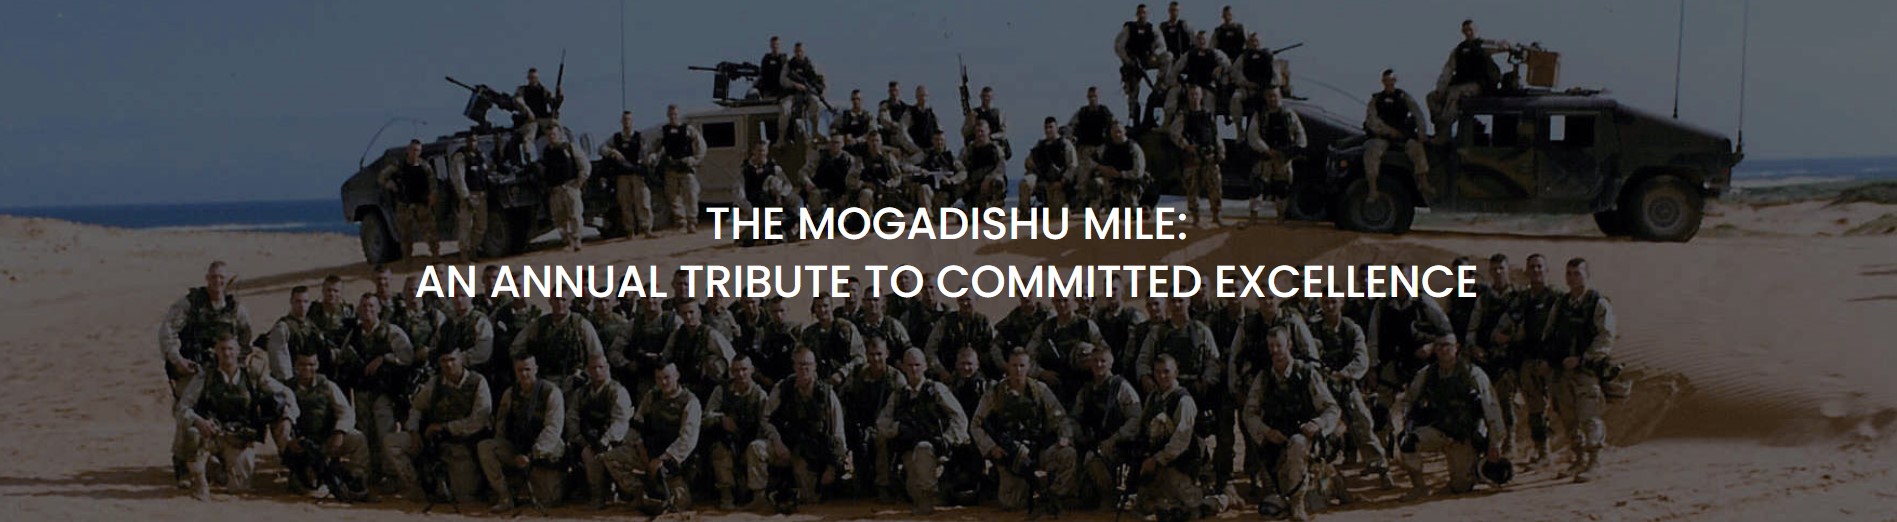 Mogadishu Mile